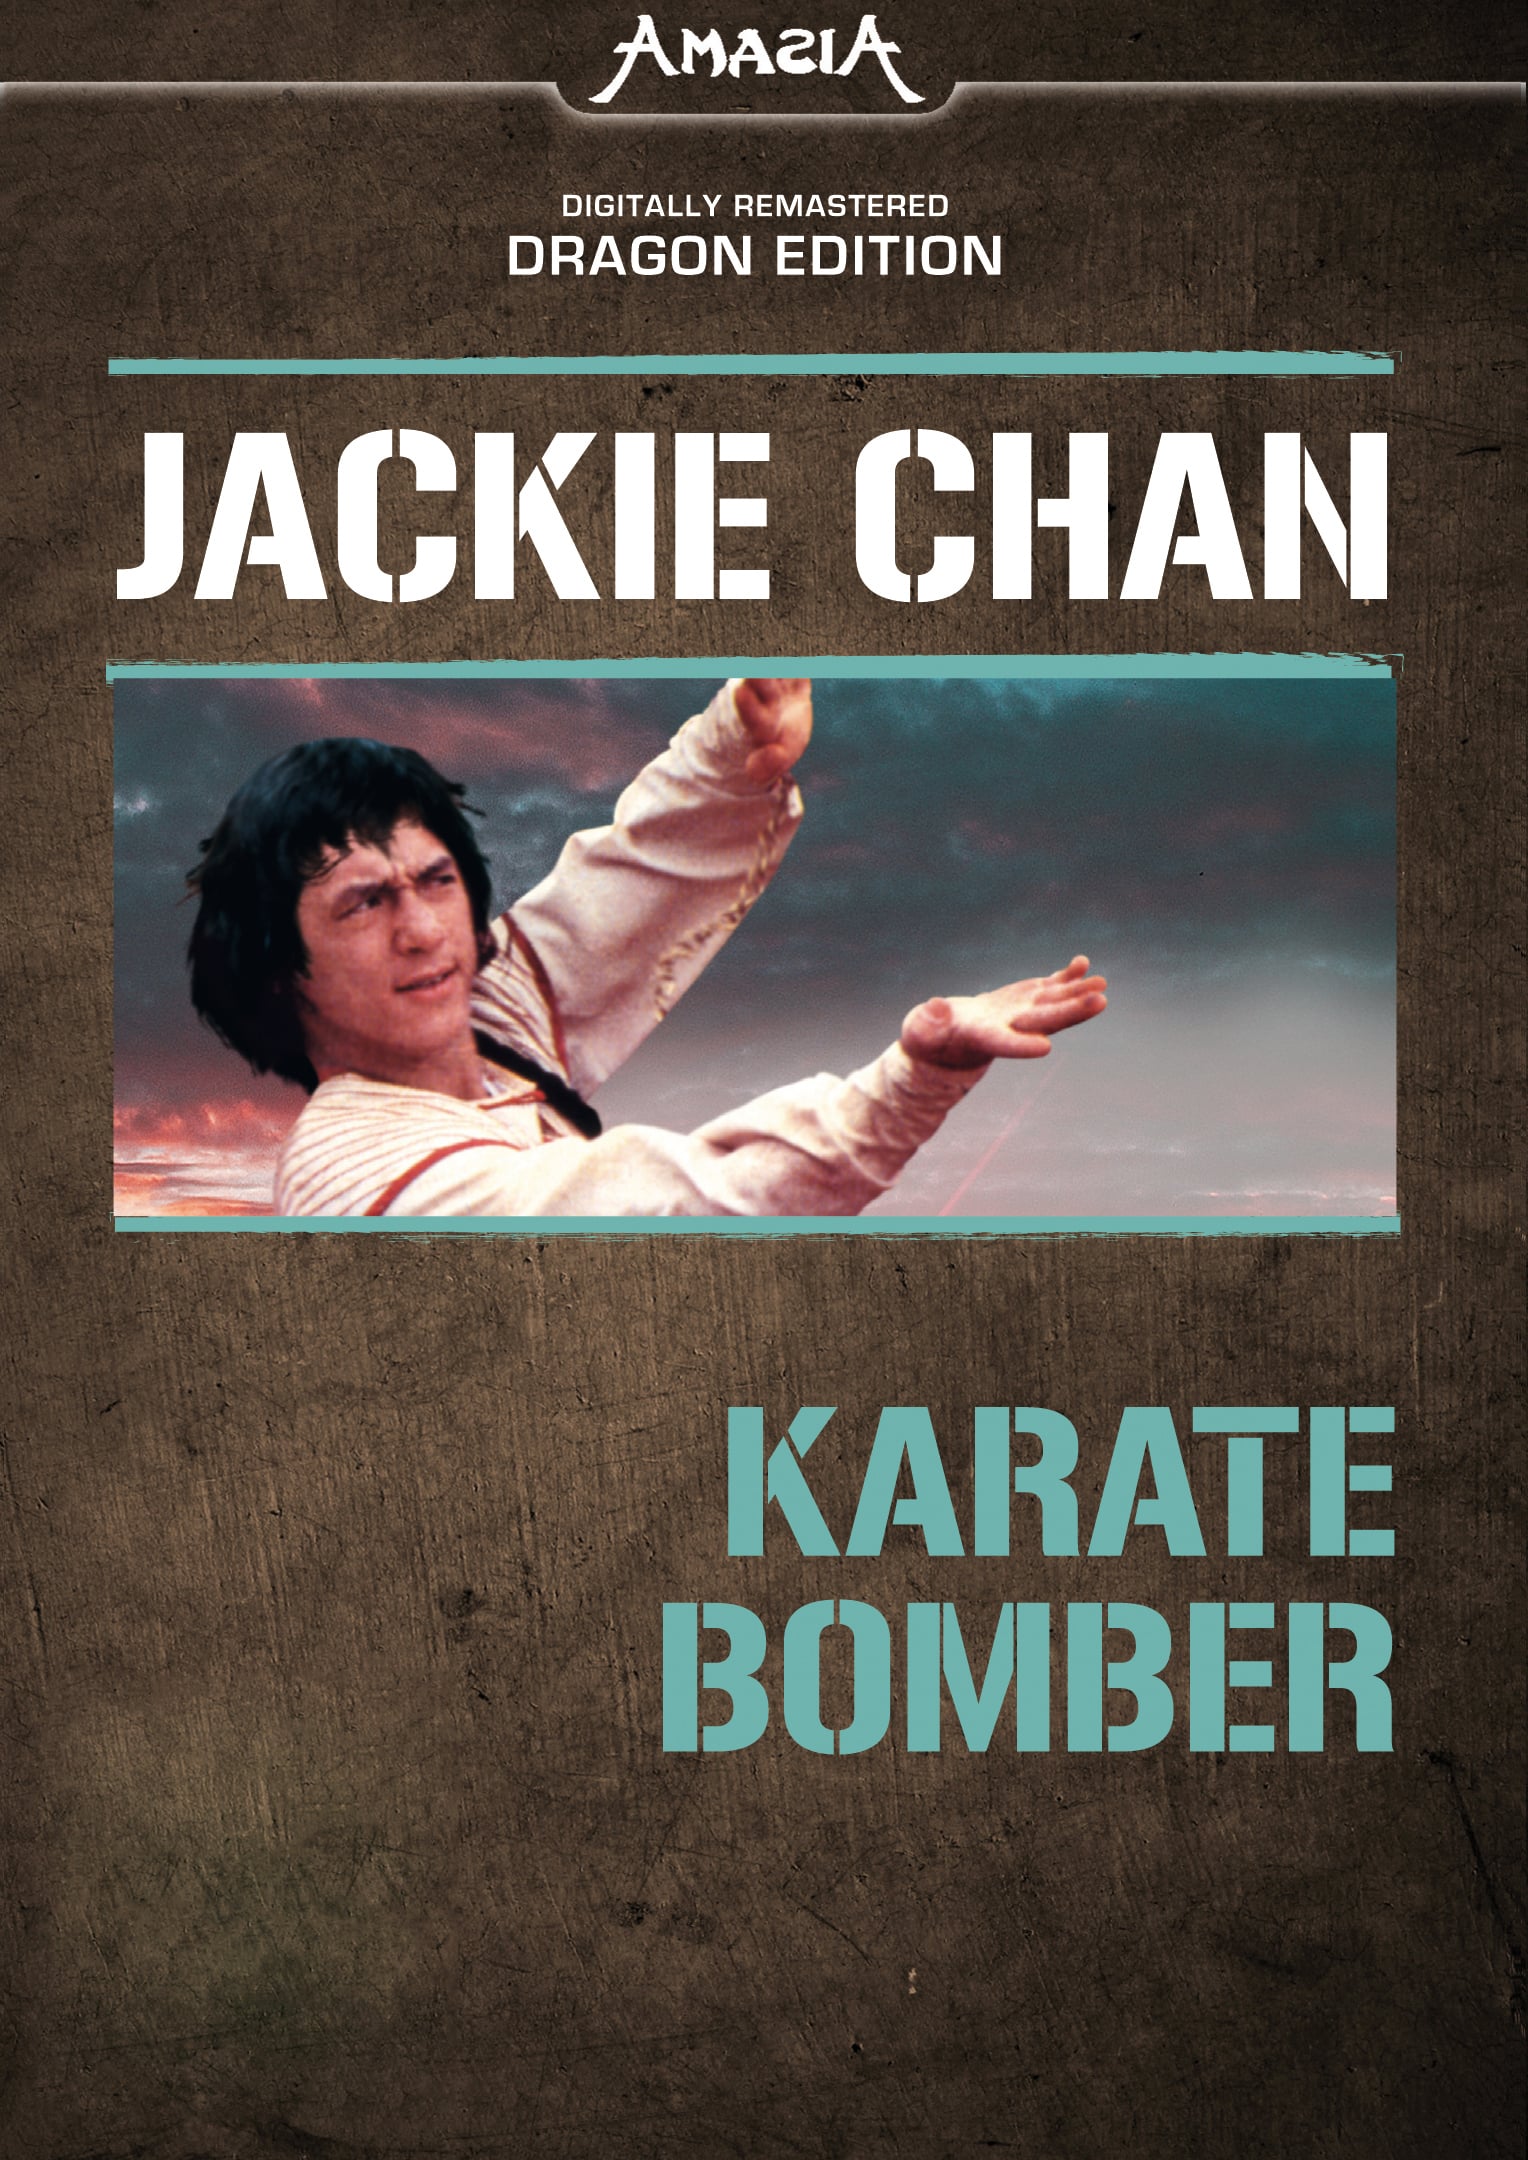 Plakat von "Karate Bomber"